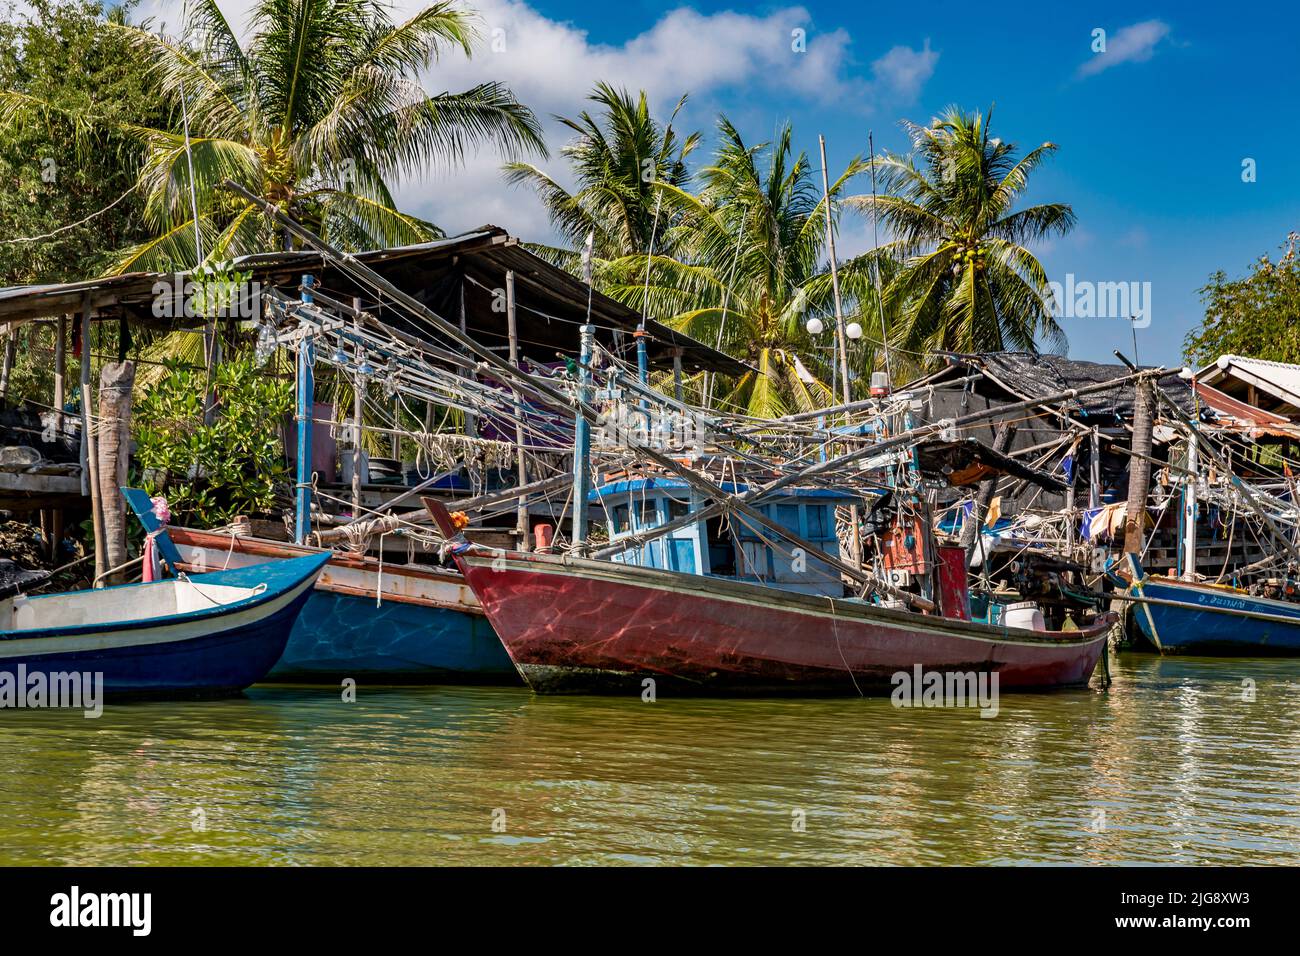 Bateaux de tourisme et bateaux de pêche dans le port, rivière Khao Daeng, parc national Khao Sam Roi Yot, province de Prachuap Khiri Khan, Thaïlande, Asie Banque D'Images